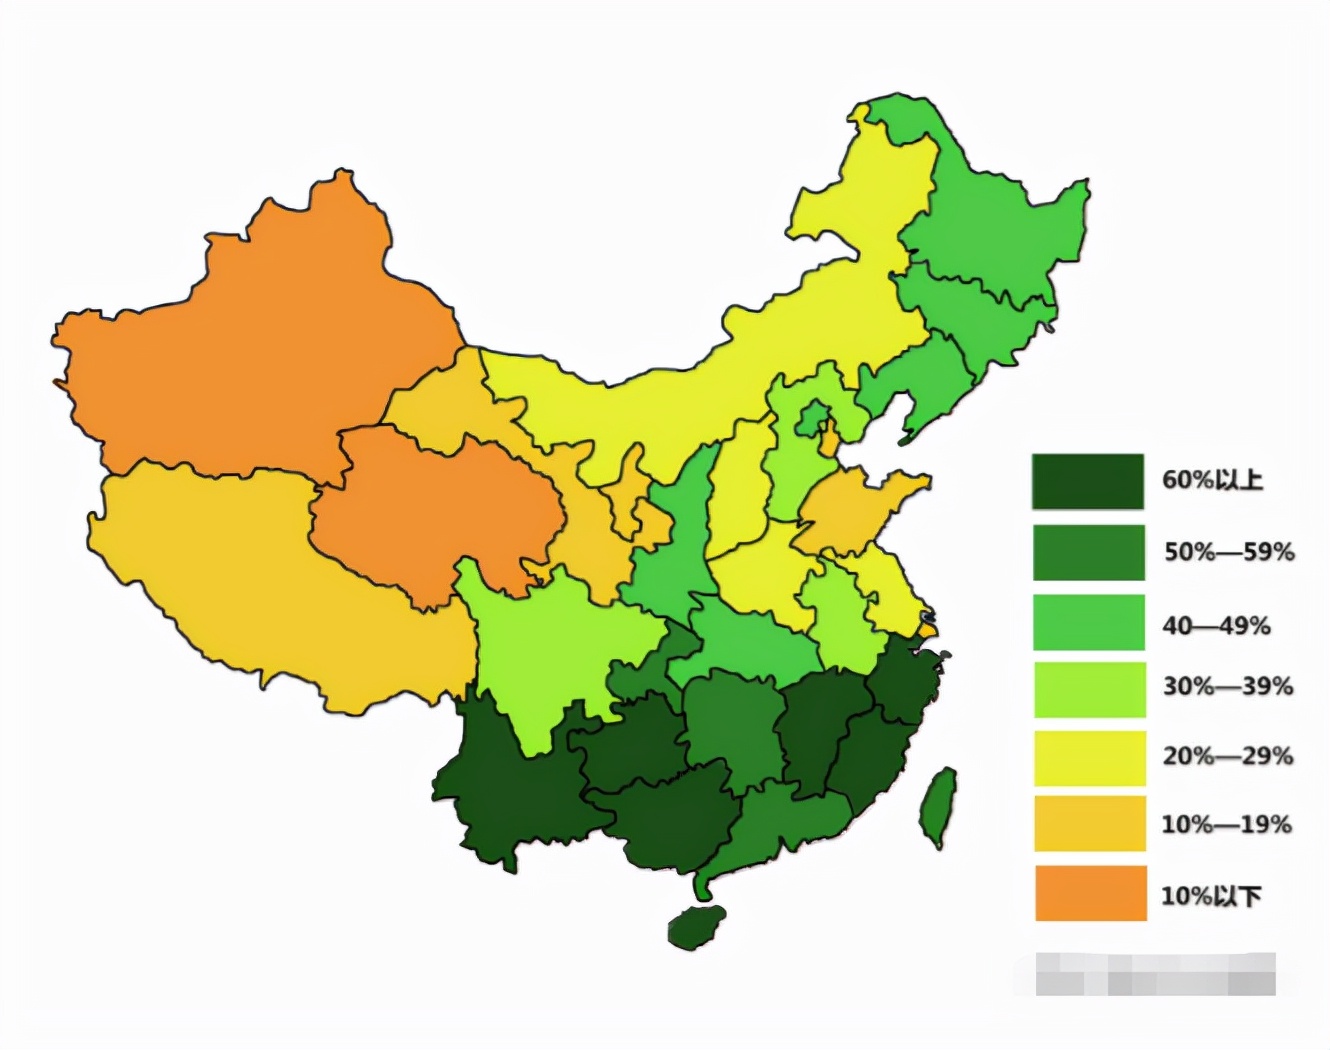 亚洲最宜居的地方就是中国东北